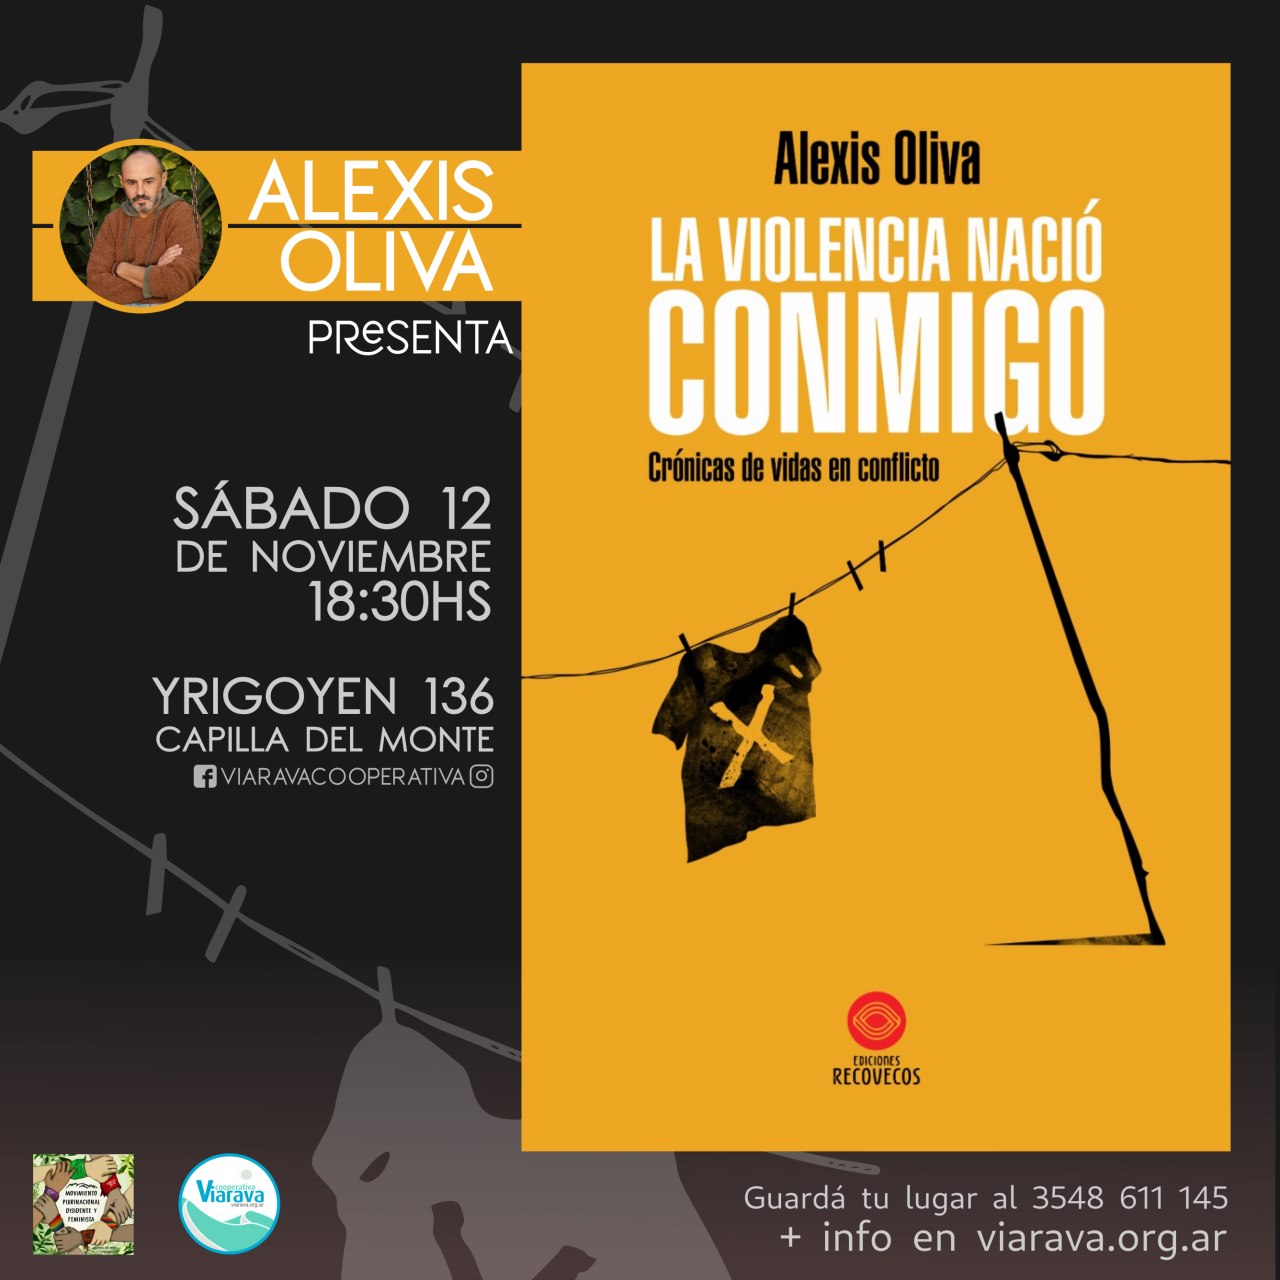 Alexis Oliva presenta «La violencia nació conmigo»